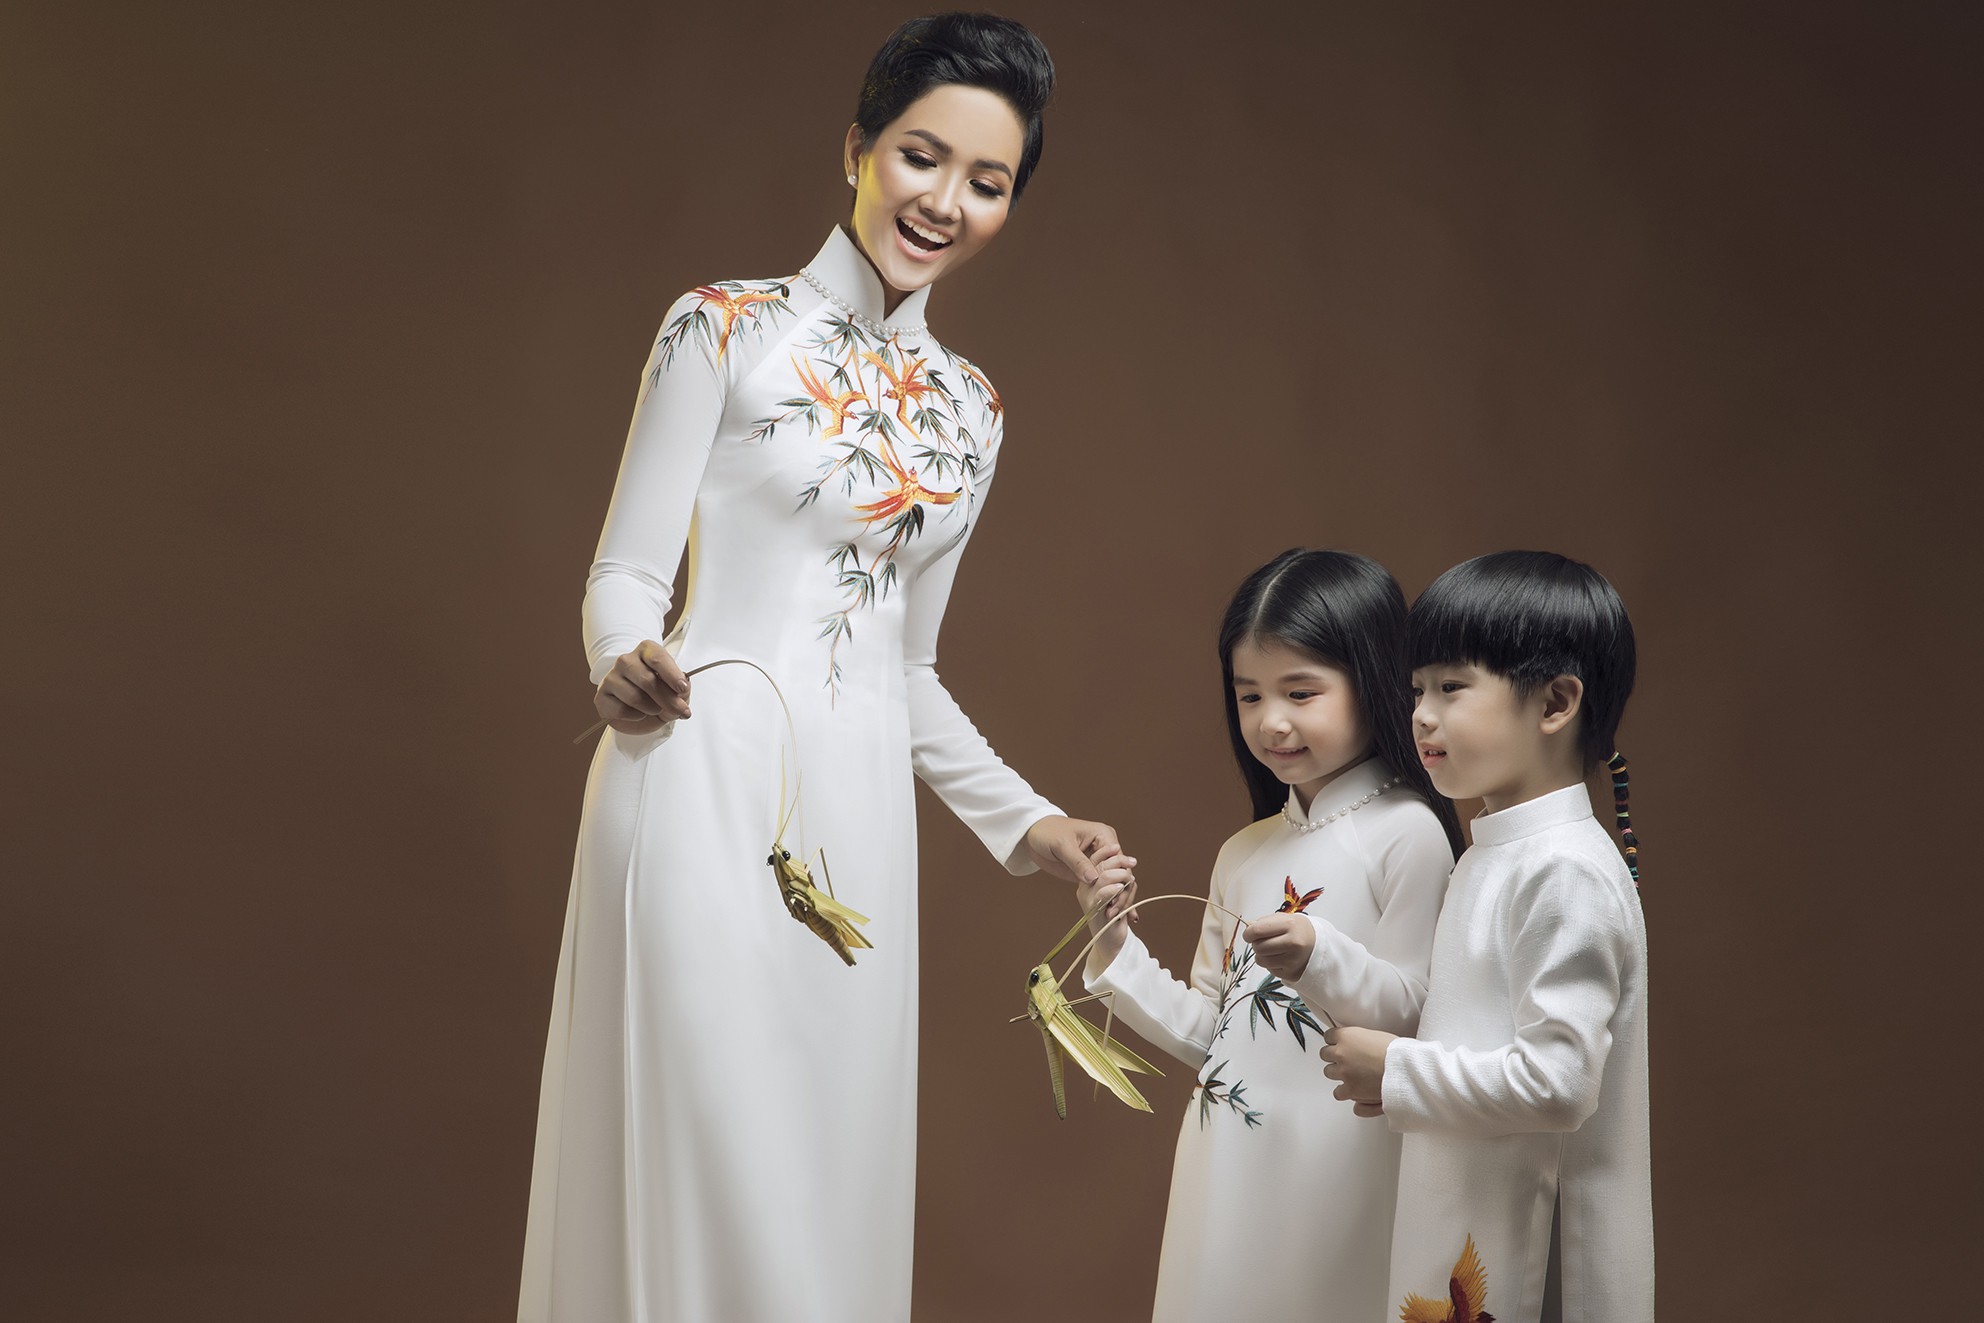 Đấu giá bộ áo dài của HHen Niê giúp trẻ em nghèo - Ảnh 2.